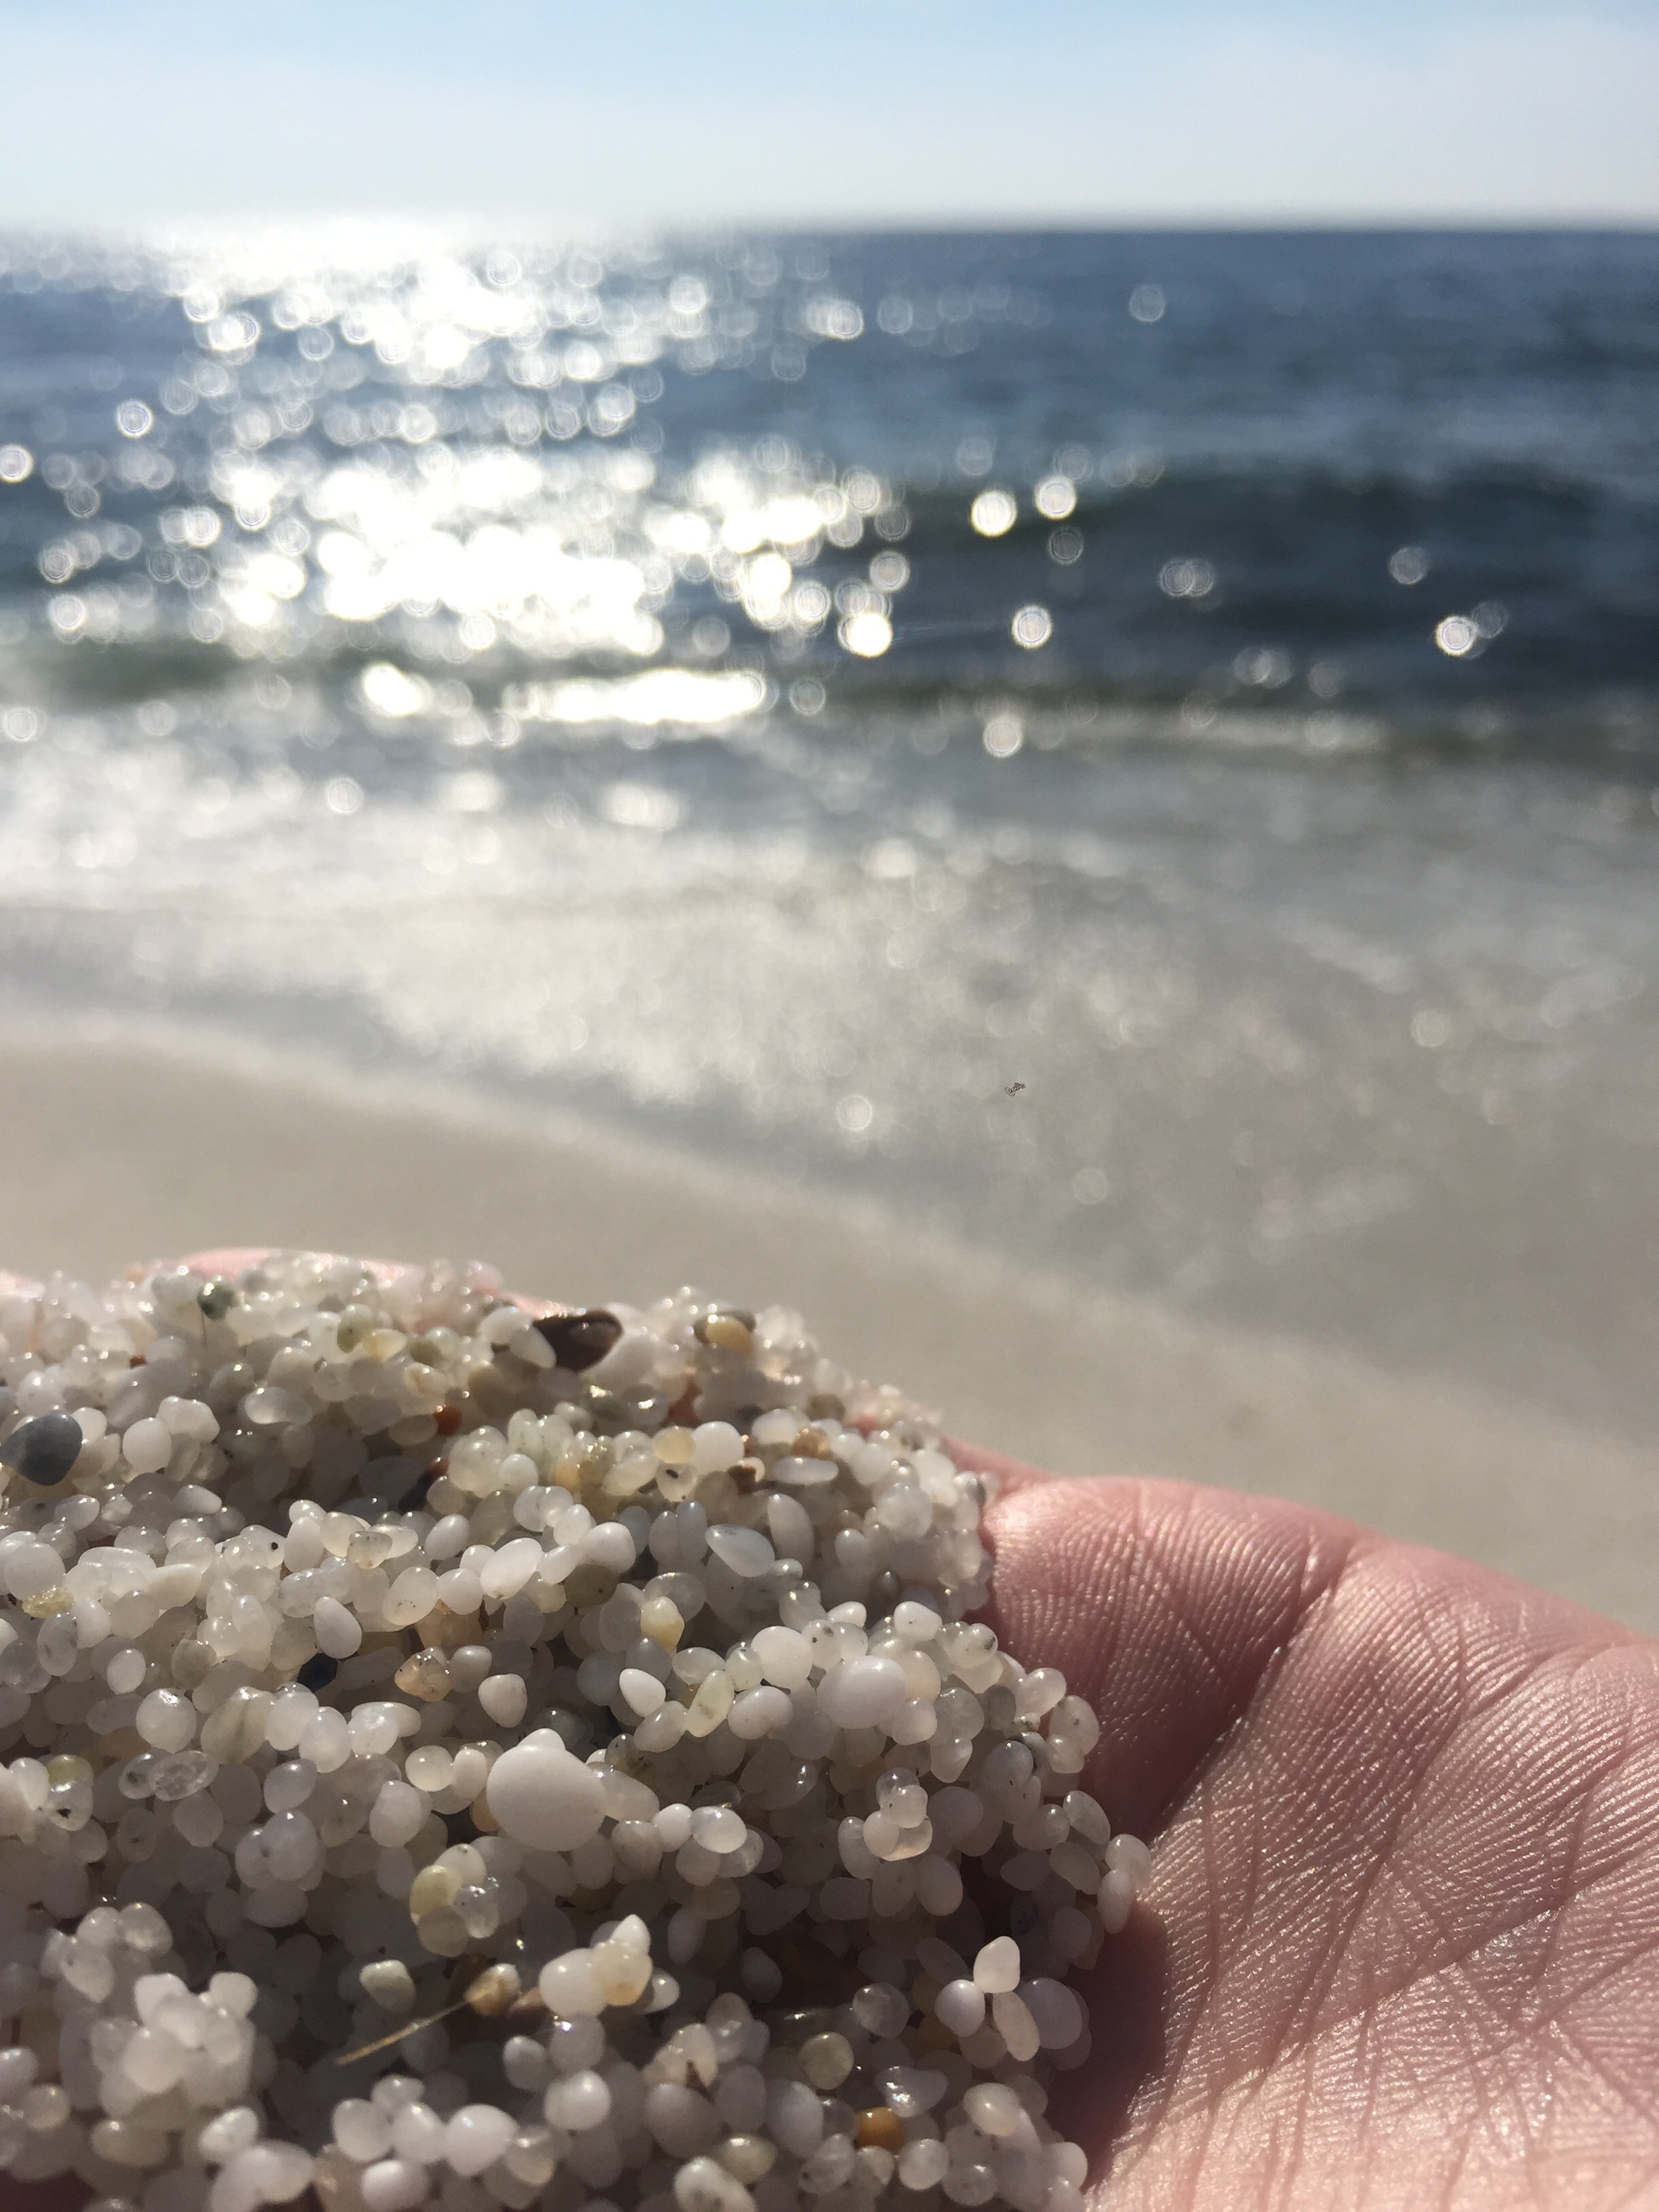 quartz beach, very unique and a hidden gem #LifeAtExpedia #sardinia